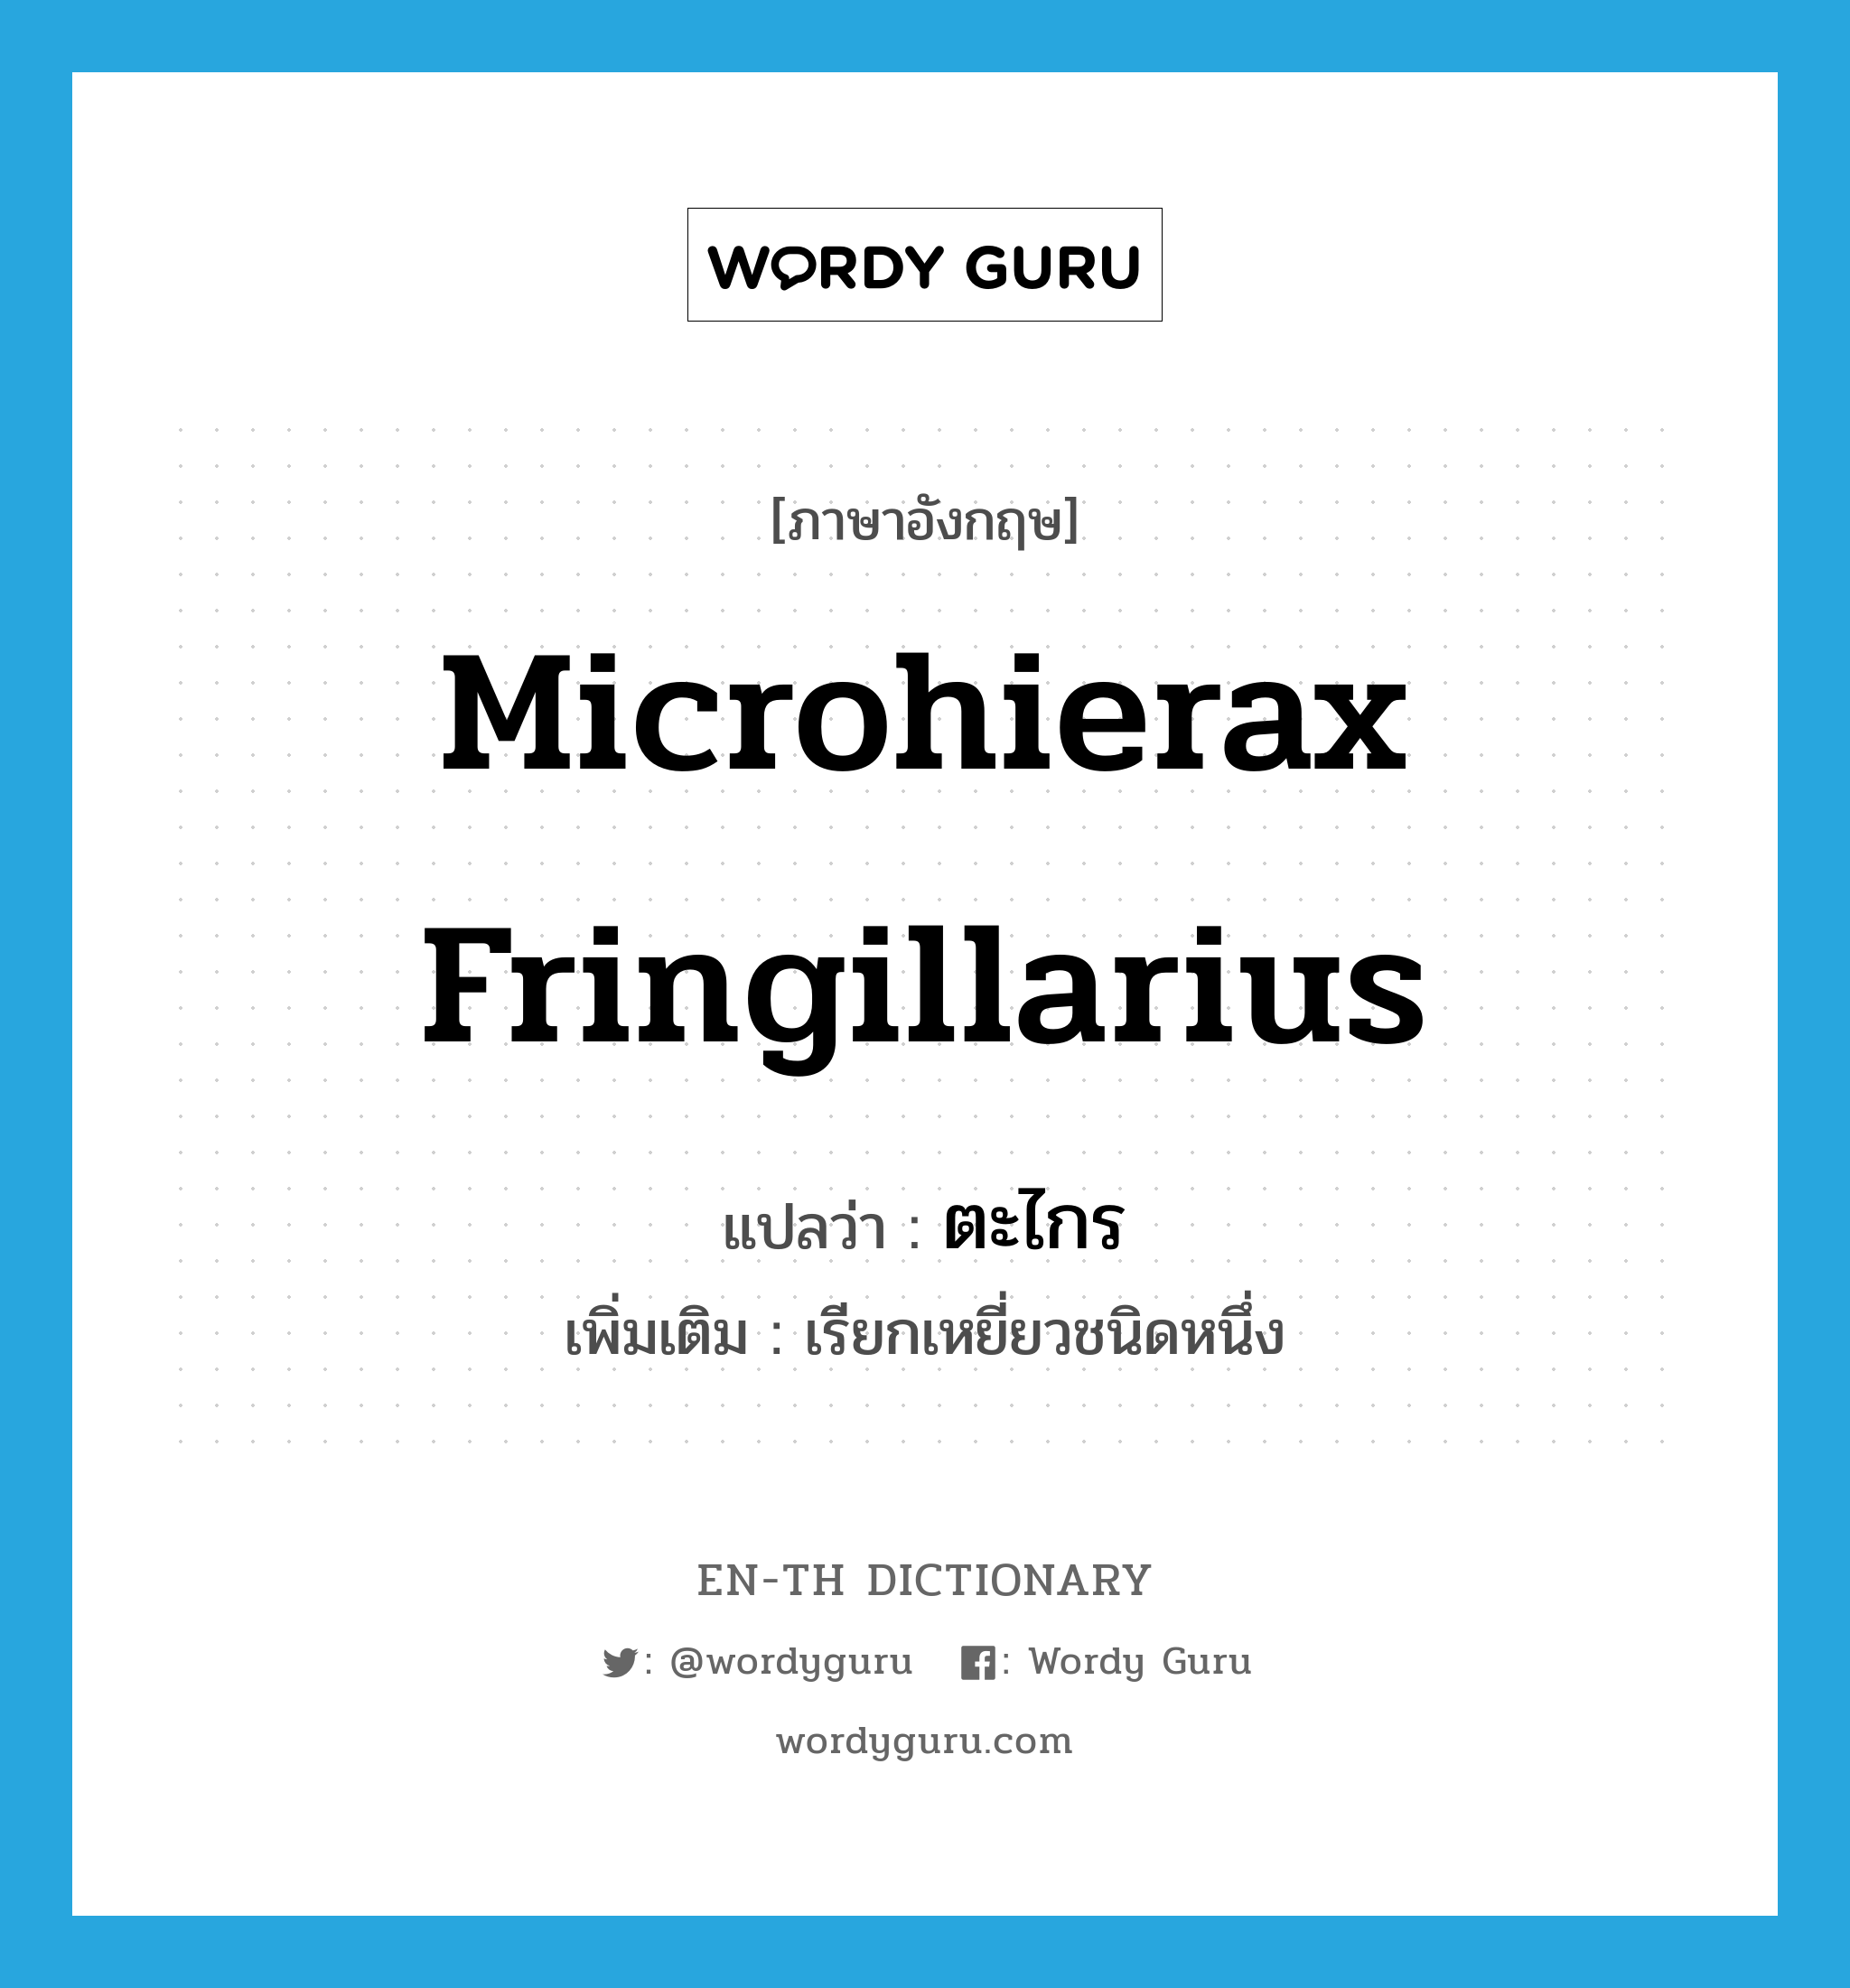 Microhierax fringillarius แปลว่า?, คำศัพท์ภาษาอังกฤษ Microhierax fringillarius แปลว่า ตะไกร ประเภท N เพิ่มเติม เรียกเหยี่ยวชนิดหนึ่ง หมวด N